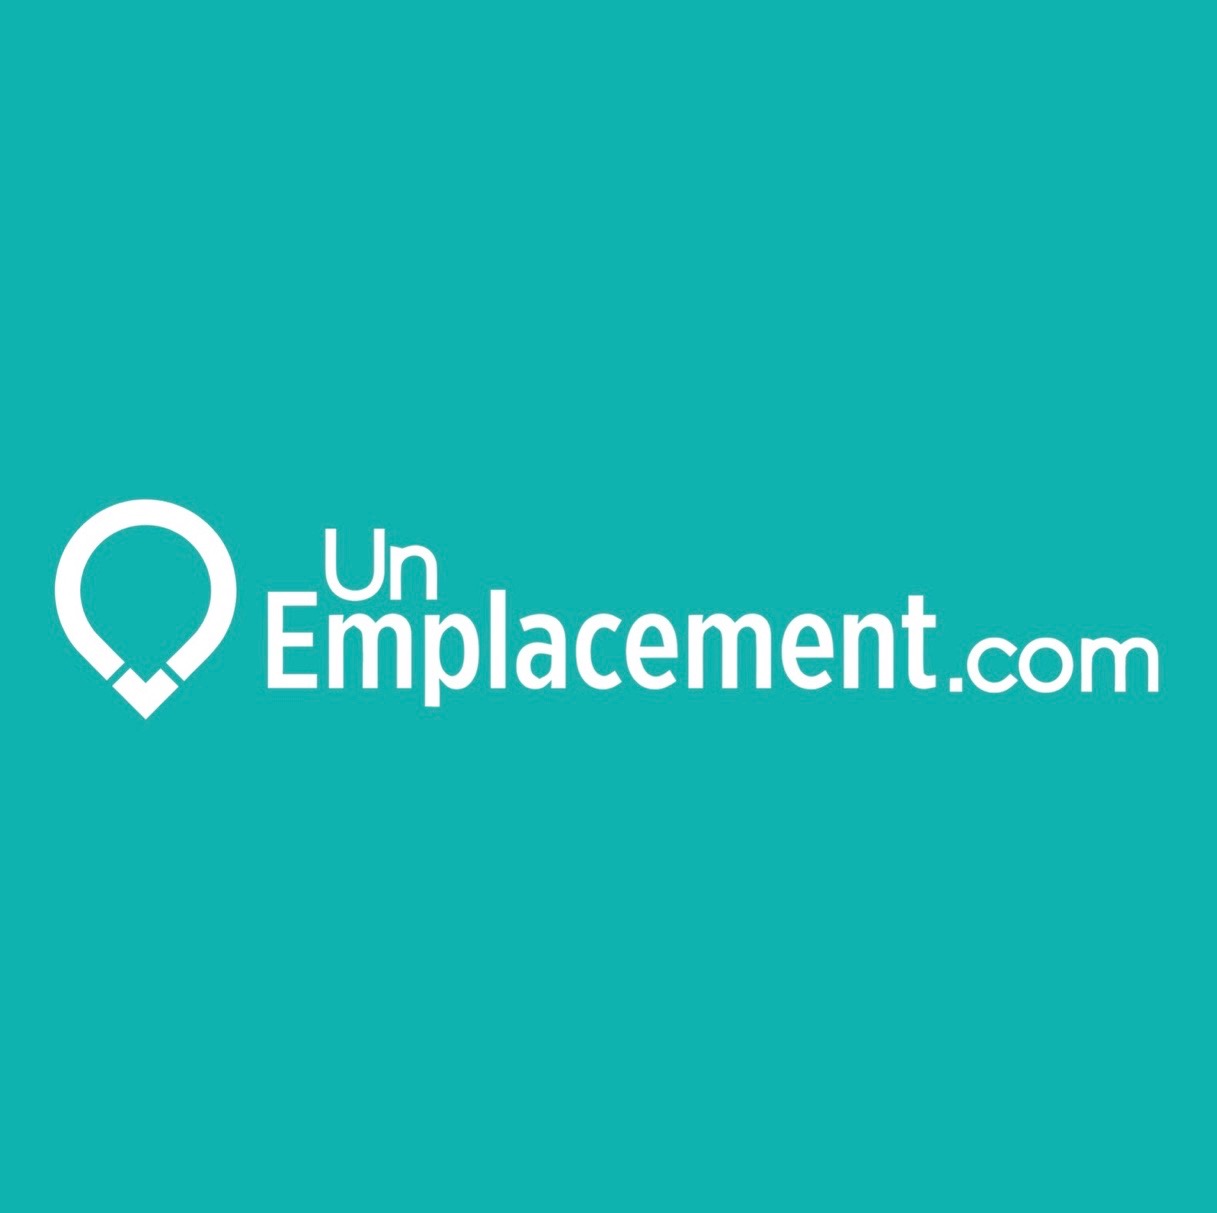 Logo UnEmplacement.com